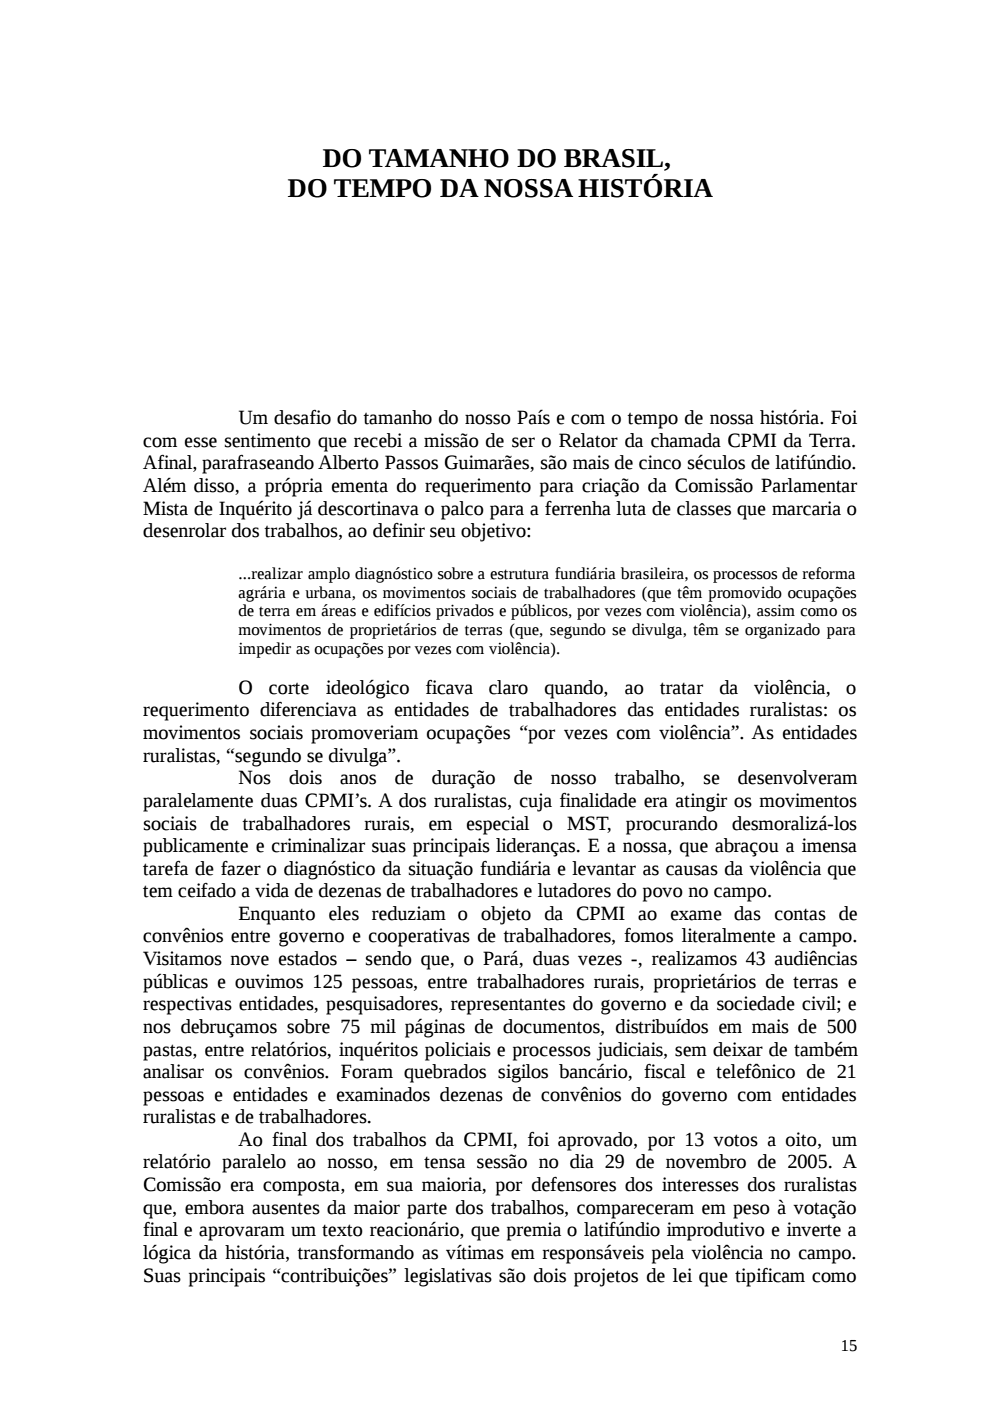 Page 15 from Relatório final da comissão